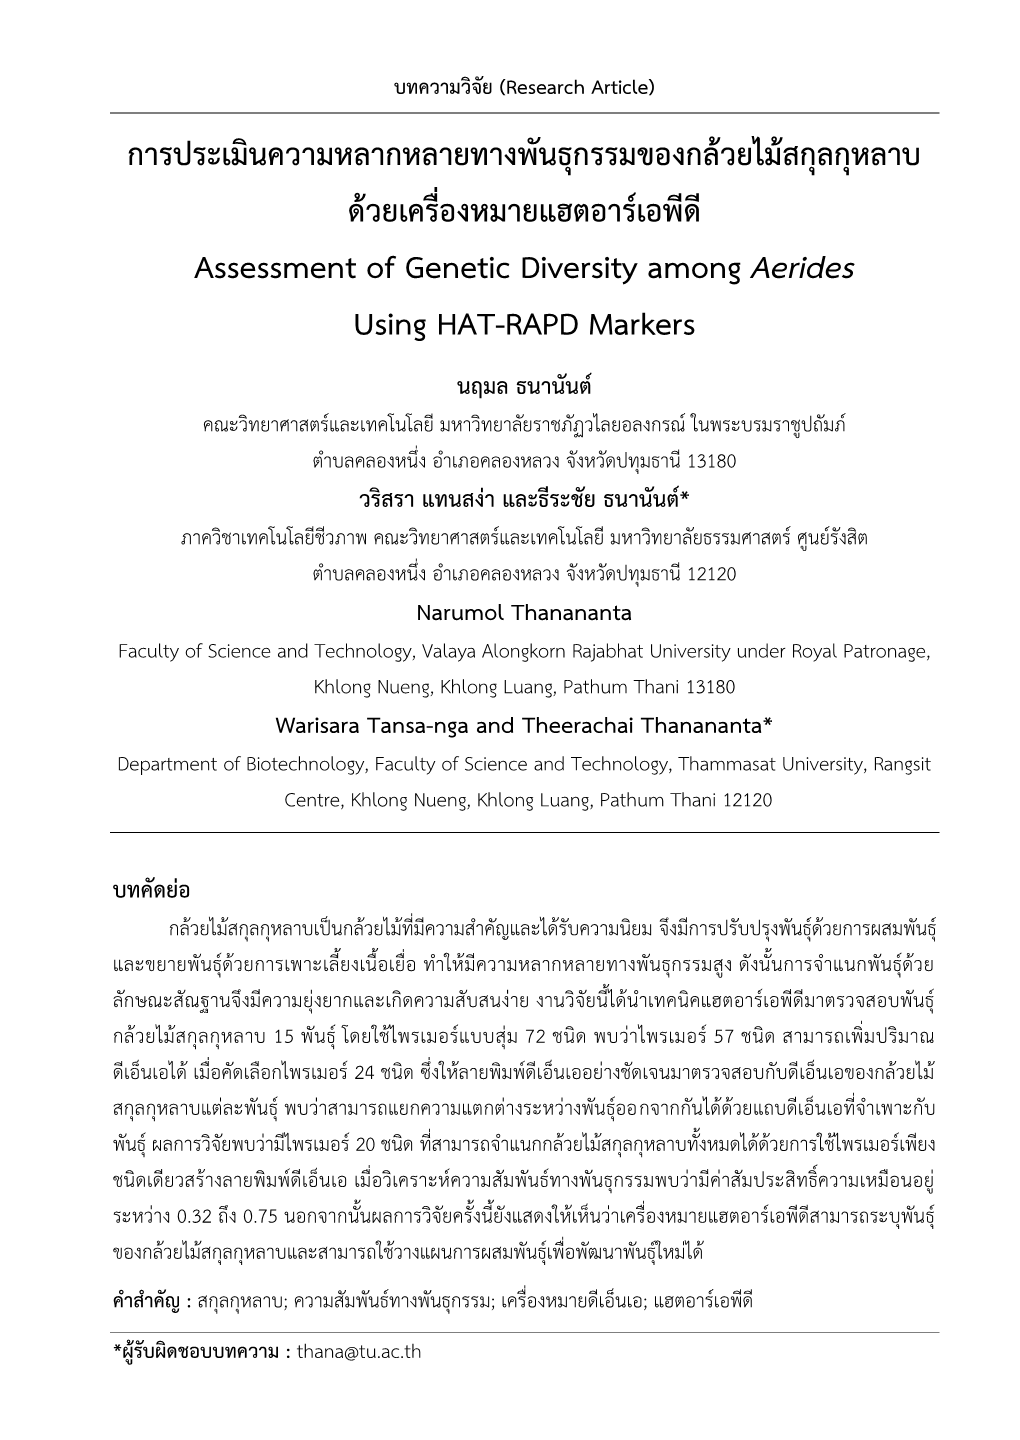 การประเมินความหลากหลายทางพันธุกรรมของกล้วยไม้สกุลกุหลาบ ด้วยเครื่องหมายแฮตอาร์เอพีดี Assessment of Genetic Diversity Among Aerides Using HAT-RAPD Markers